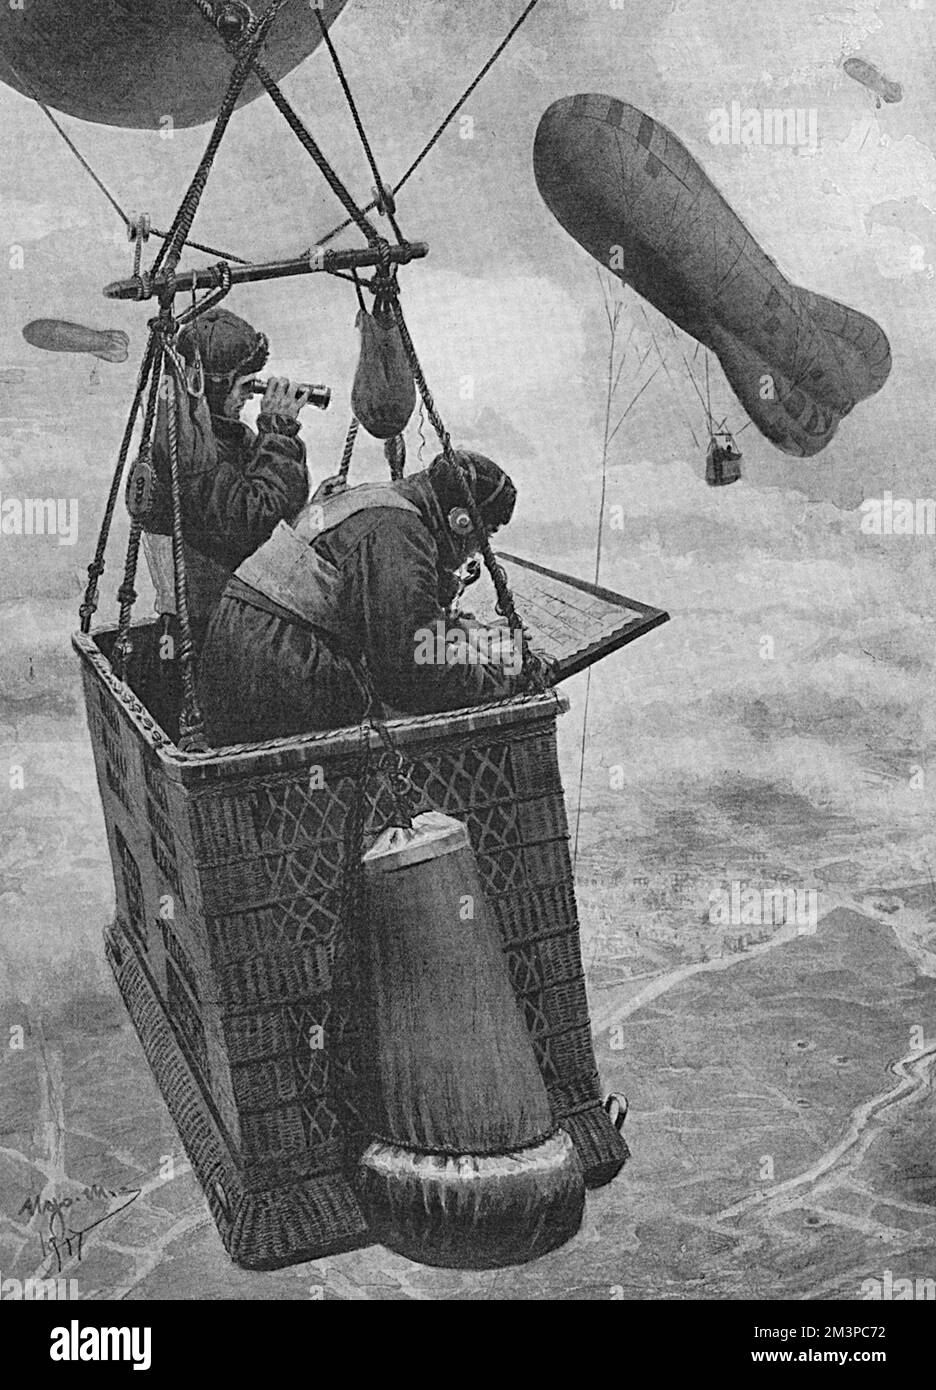 Deux observateurs dans le panier d'un ballon cerf-volant ont photographié l'activité de repérage sur le sol ci-dessous. La section de ballon de cerf-volant (souvent connue sous le nom de montgolfière) a été utilisée à la fois par le service aérien naval et militaire et a ensuite été absorbée par la nouvelle Force aérienne royale en 1918. Date: 1918 Banque D'Images